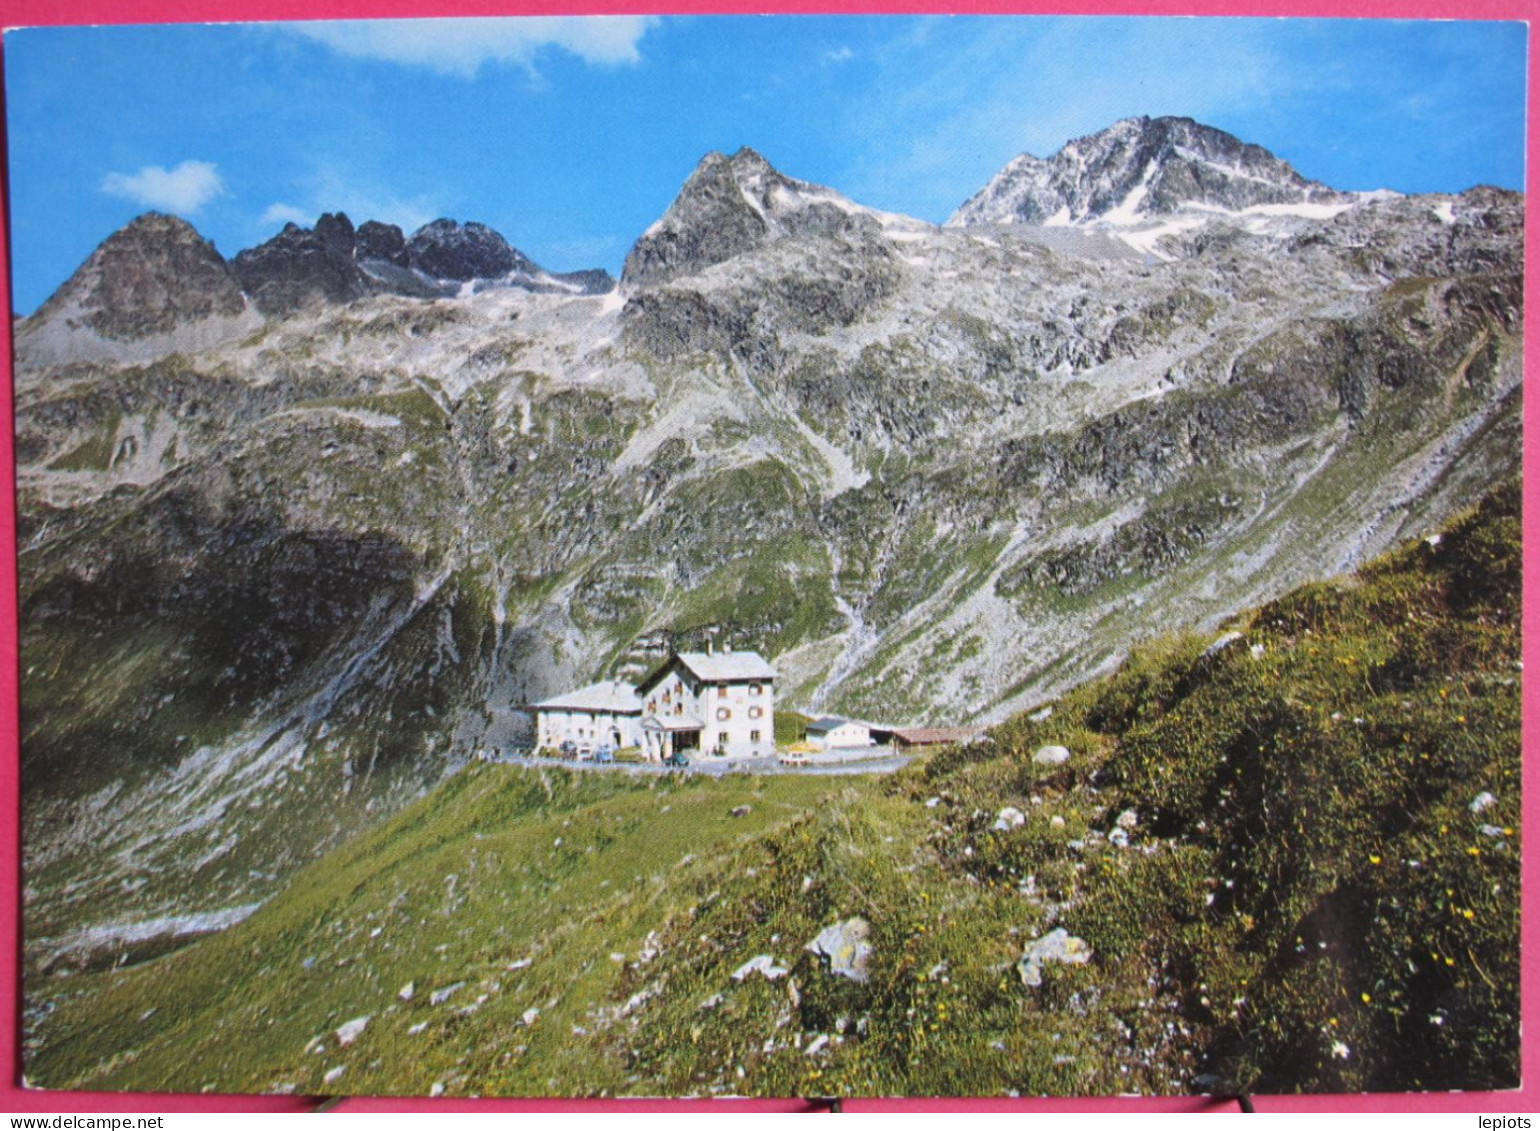 Suisse - Grisons - Splügenpass - Berghaus Mit Schwarzhörner Und Surettahorn - Très Bon état - Splügen